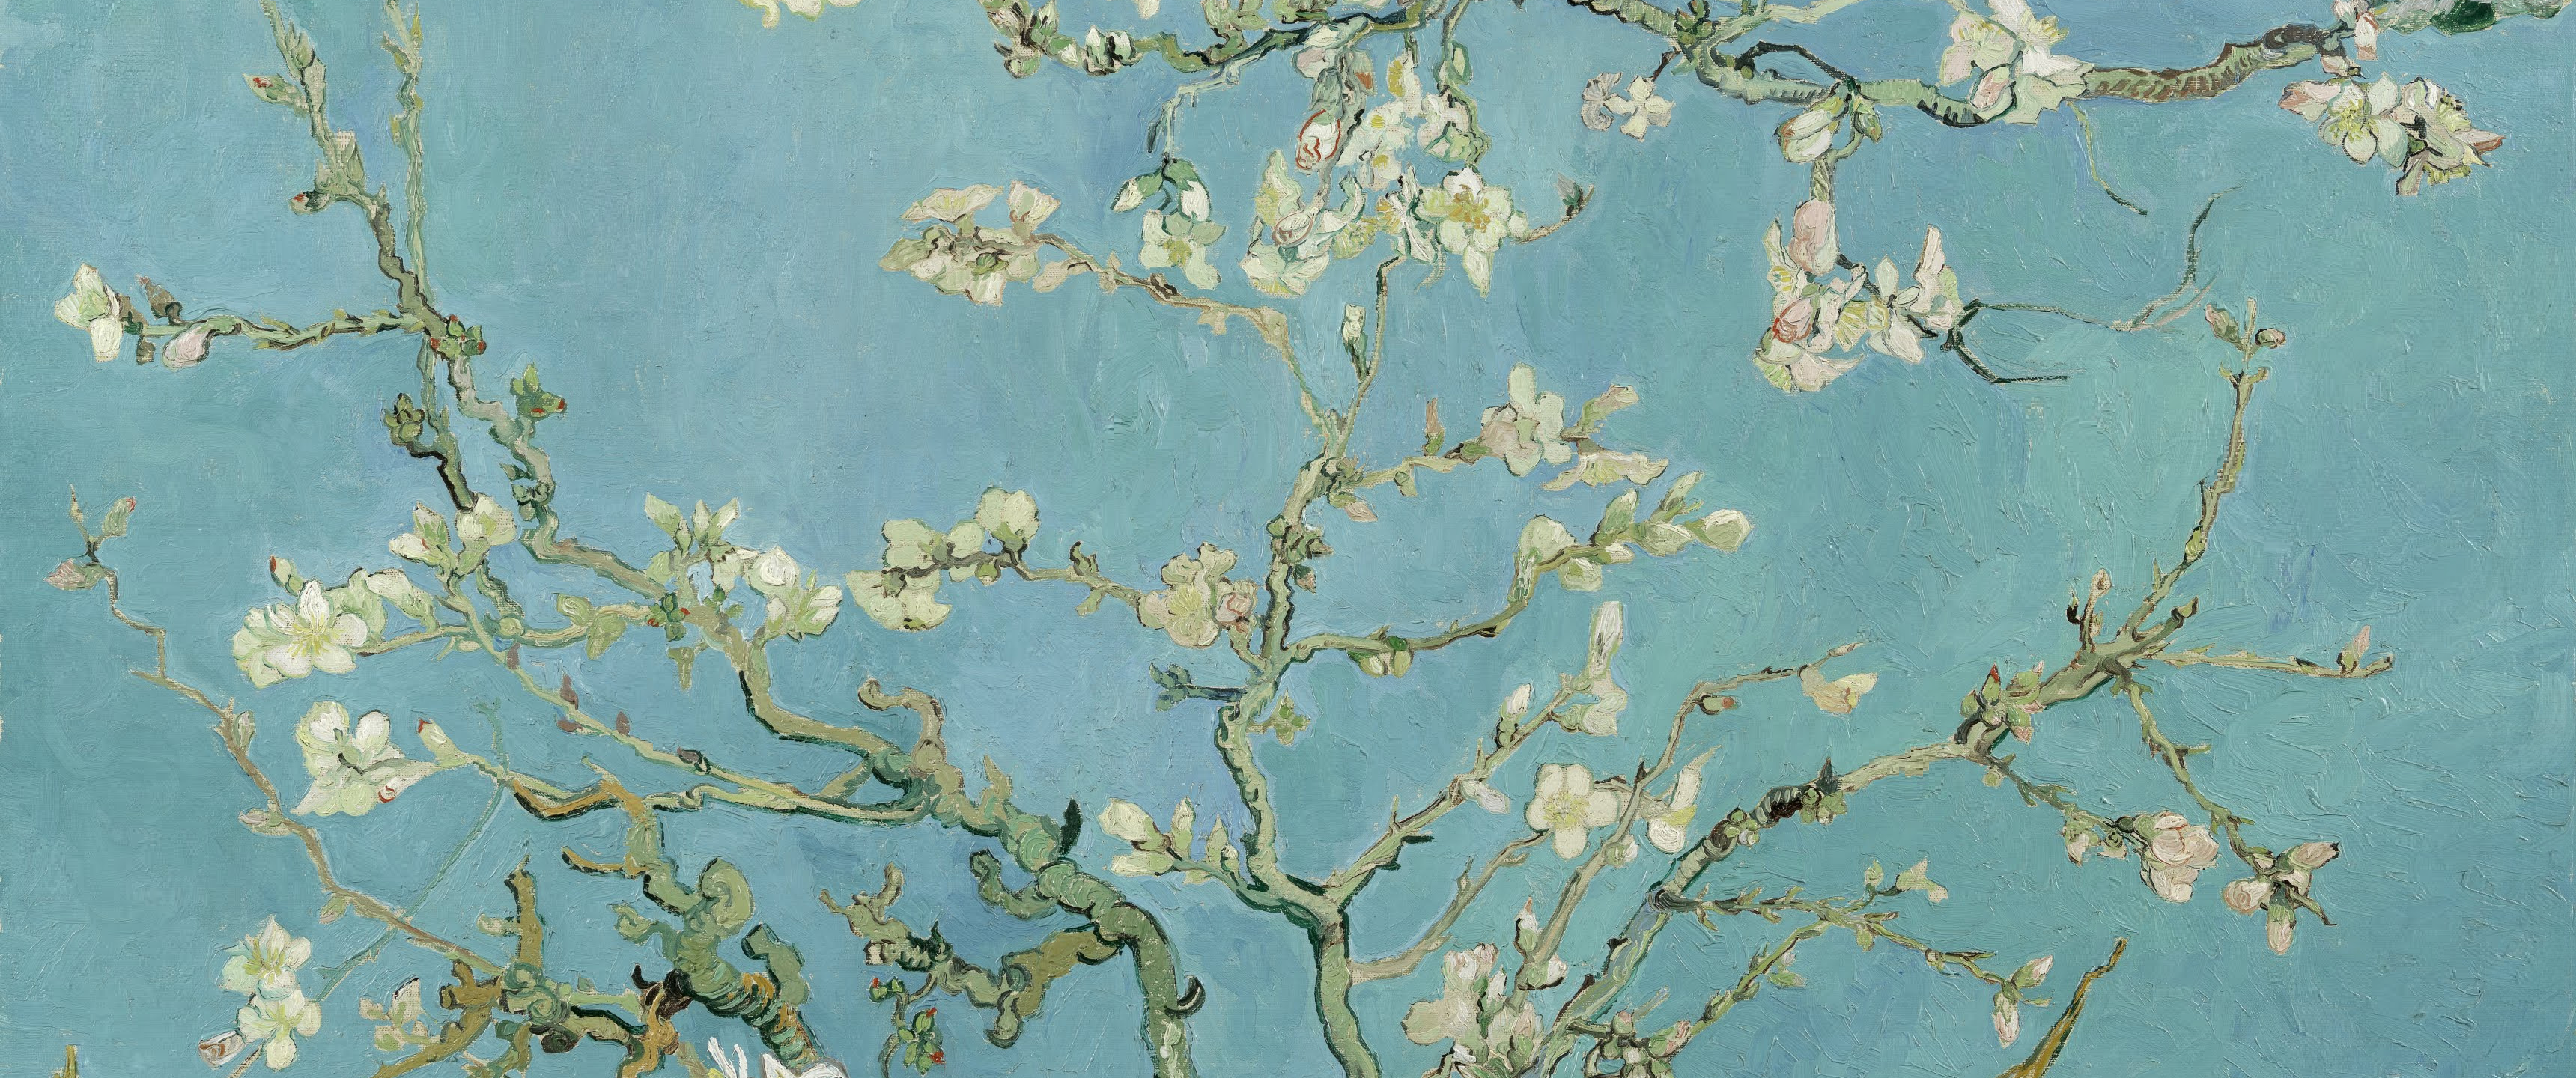 Картина Ван Гога цветы на голубом фоне